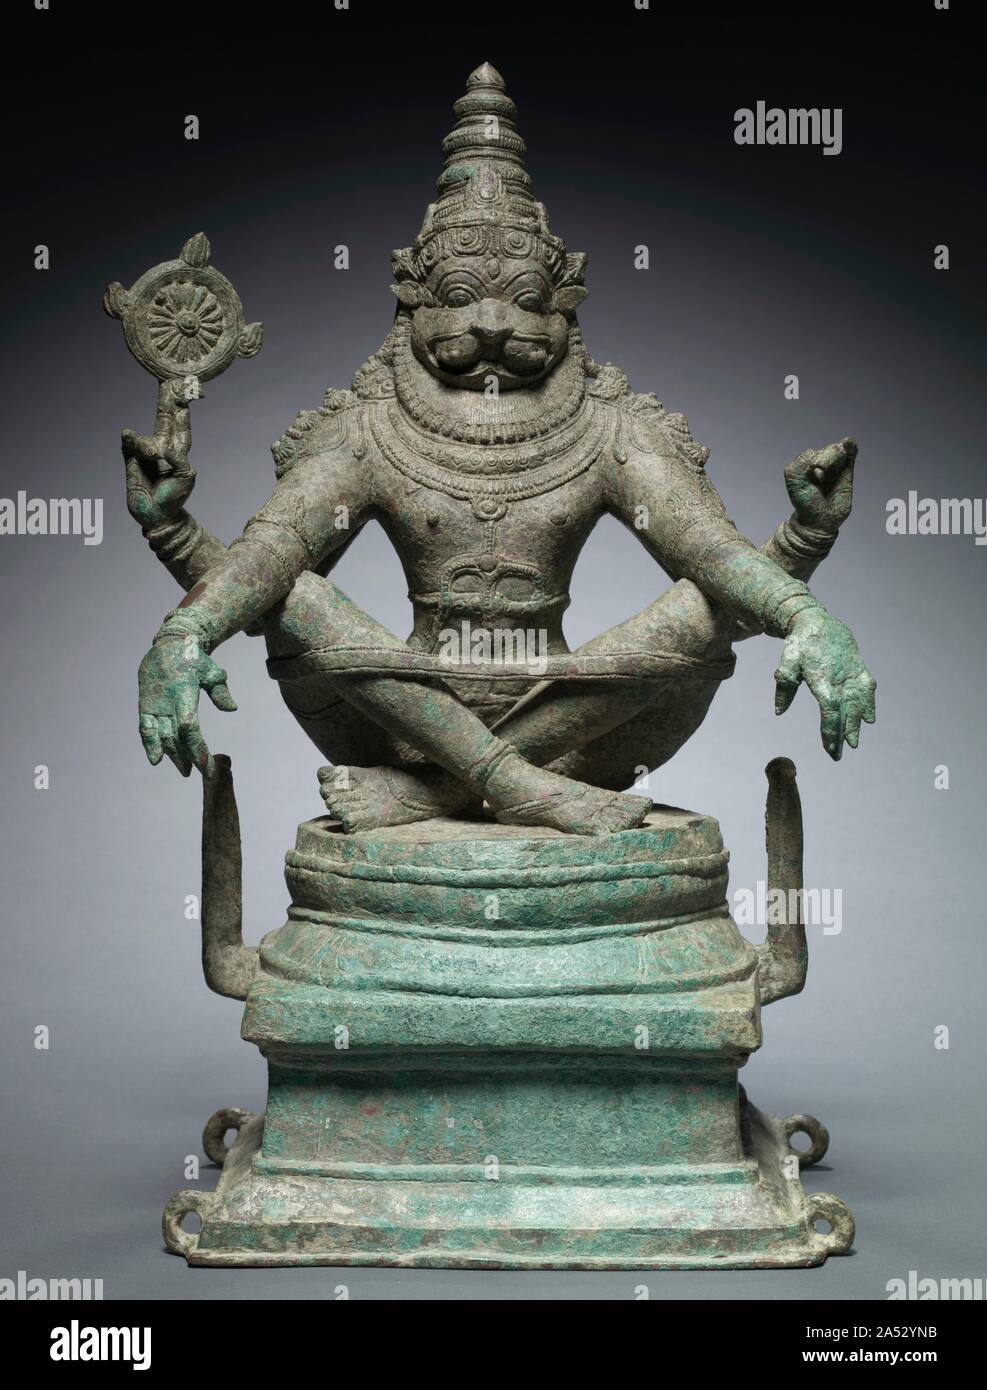 Lo Yoga Narashimha, Vishnu nella sua Man-Lion Avatar, c. 1250. Narasimha significa "l'uomo-lion" in Sanscrito e è il nome di uno dei dieci principali avatar oppure incarnazioni del dio Vishnu. Per i devoti, l'uomo-leone forma ricorda un mito che descrive il suo sovrumano sconfitta di un apparentemente invincibile nemico demoniaco. Questa rara forma iconica incarna anche il potere reale e yogic disciplina. L intensità della sua concentrazione è evidente nell'espressione del suo volto al di sopra del collare della criniera, la postura tesa, la simmetria e proporzioni perfette del suo quattro-corpo armato. La banda di yoga mantiene la attraversata Foto Stock